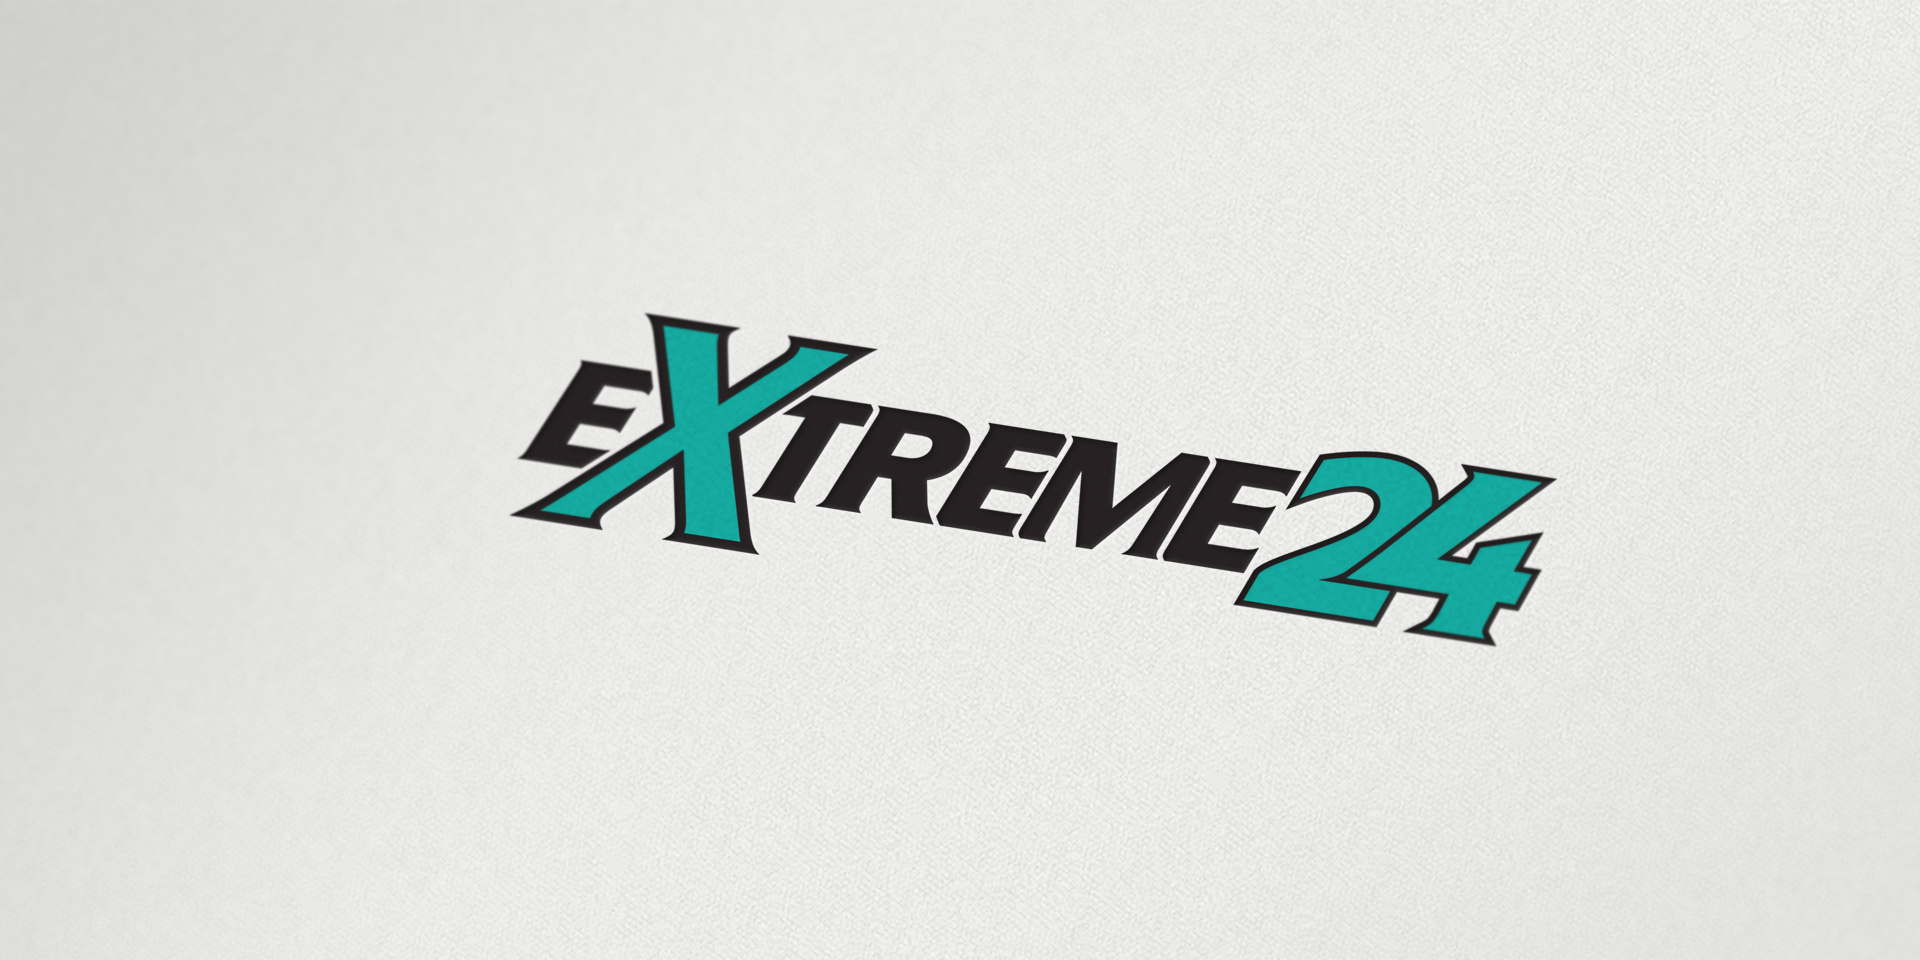 Extreme24